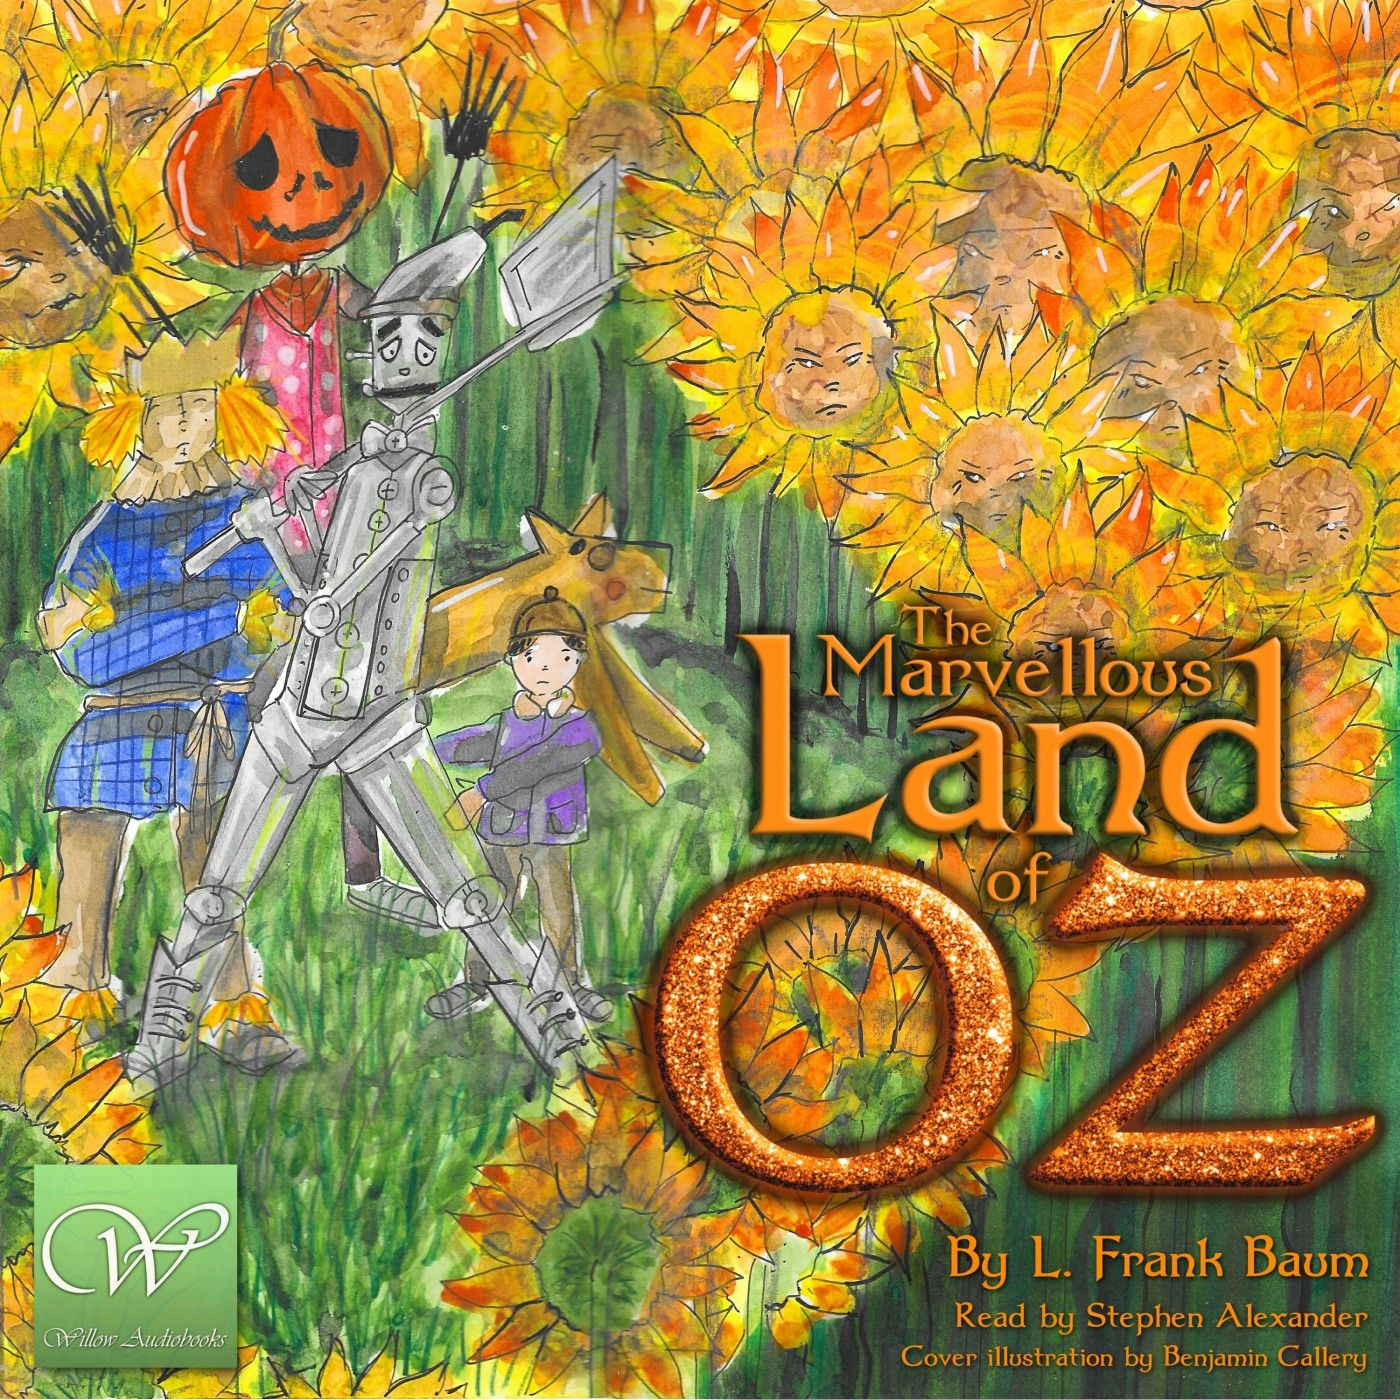 The Marvellous Land of Oz | Part 3 (Ch 11-14)